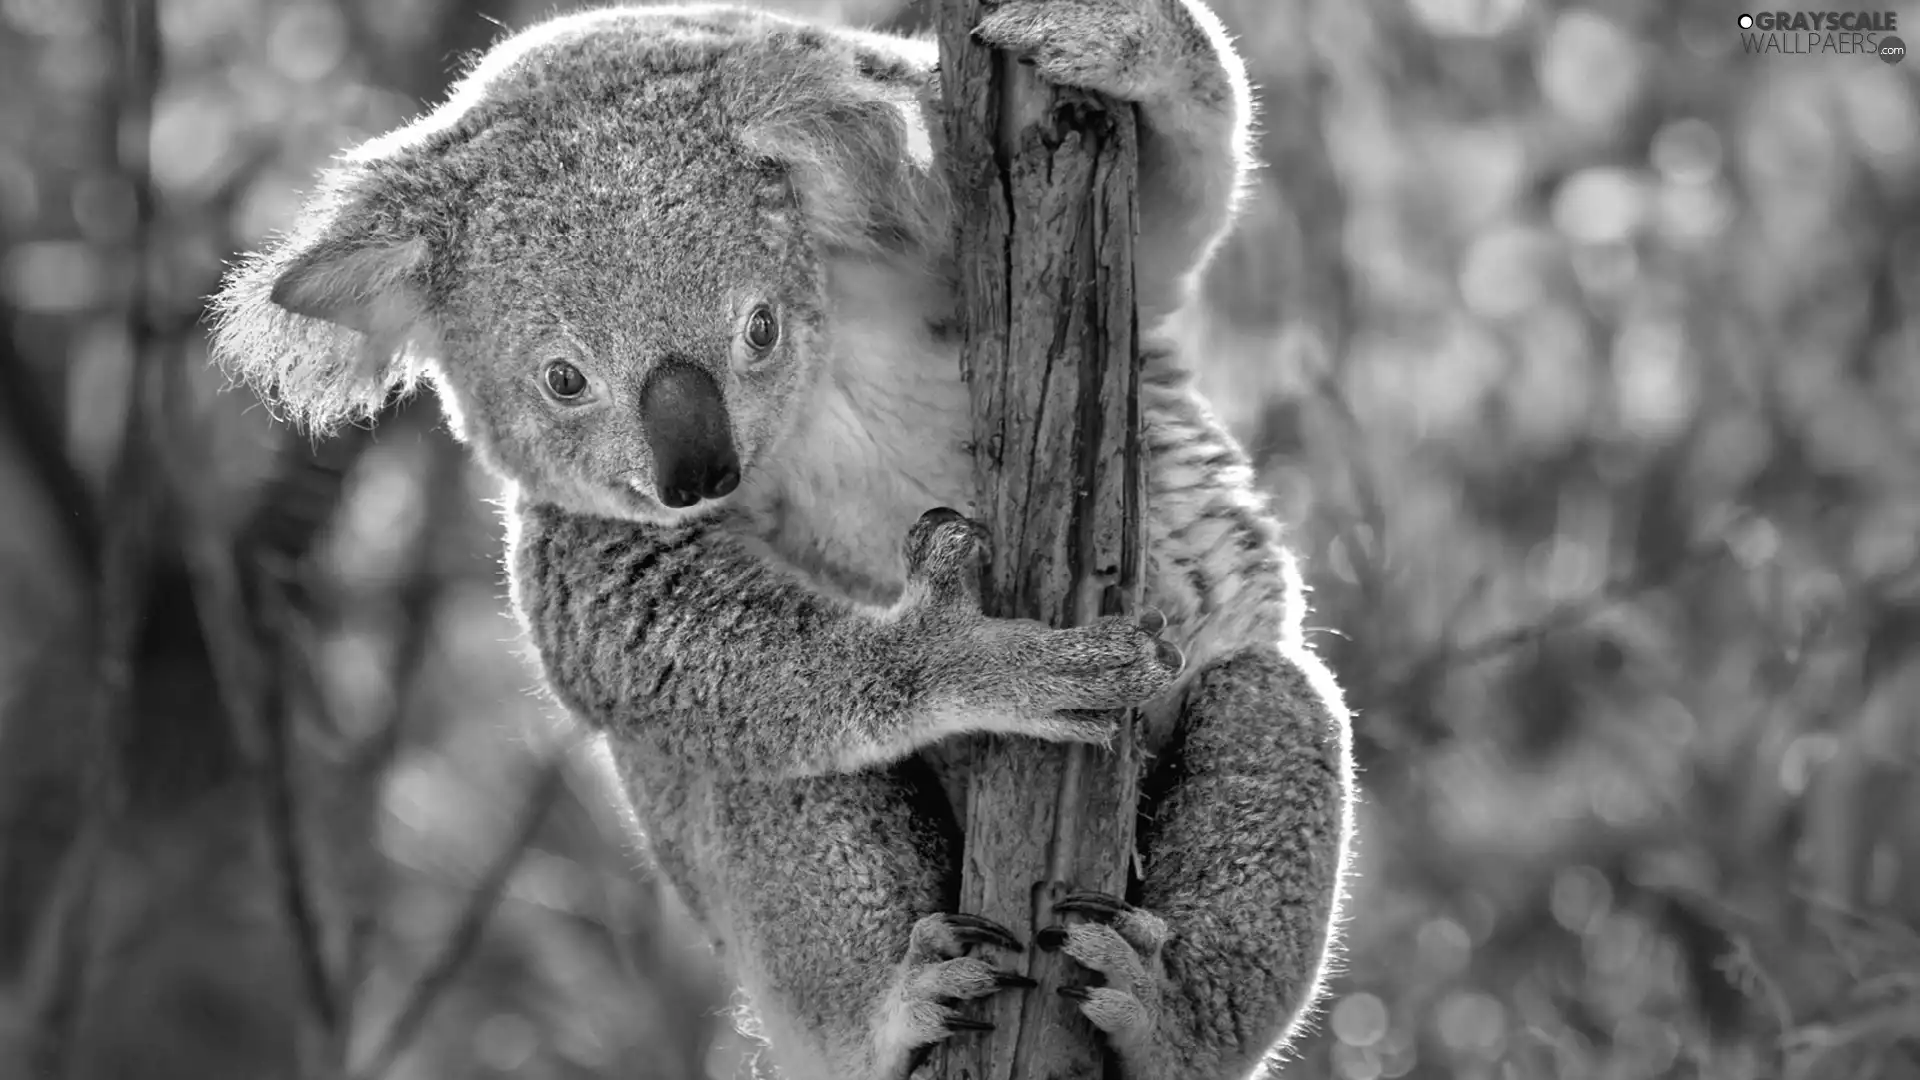 branch, teddy bear, Koala